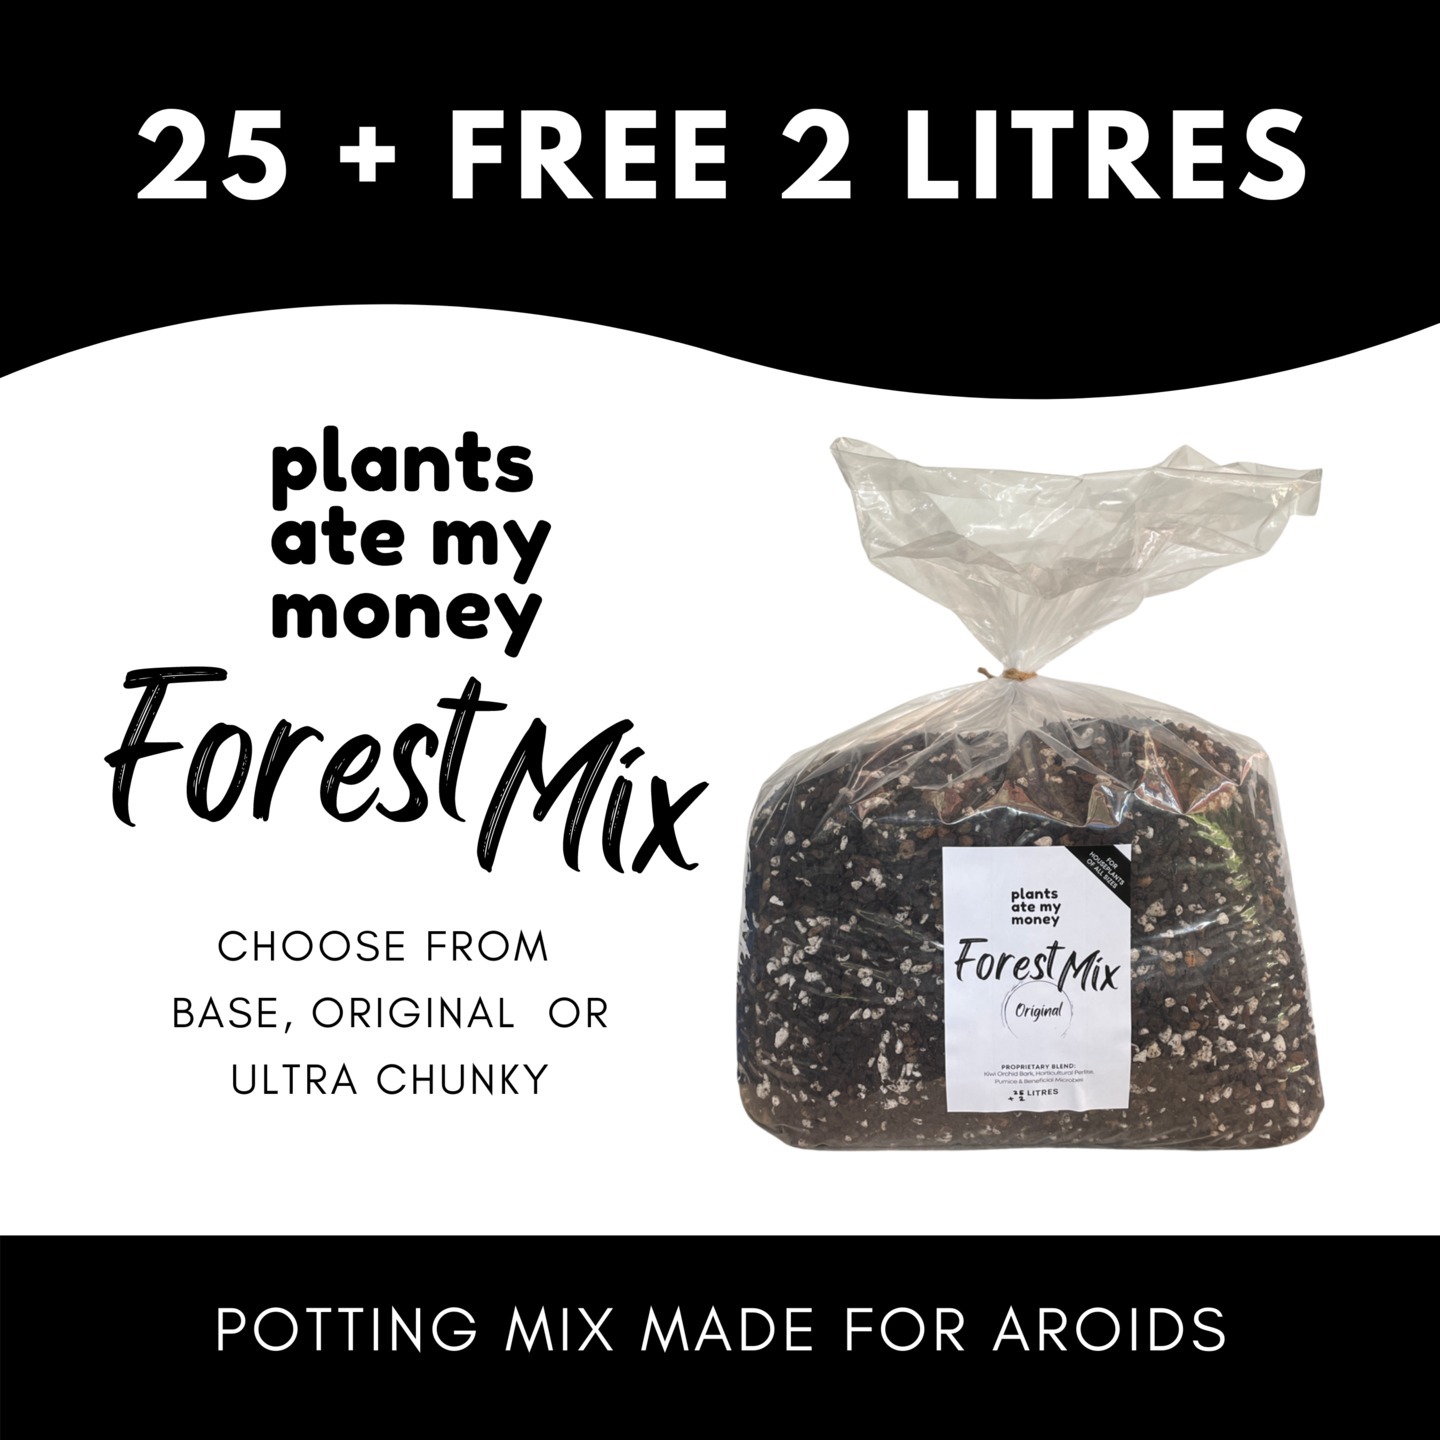 Forest Mix - Original 25L + 2L Free